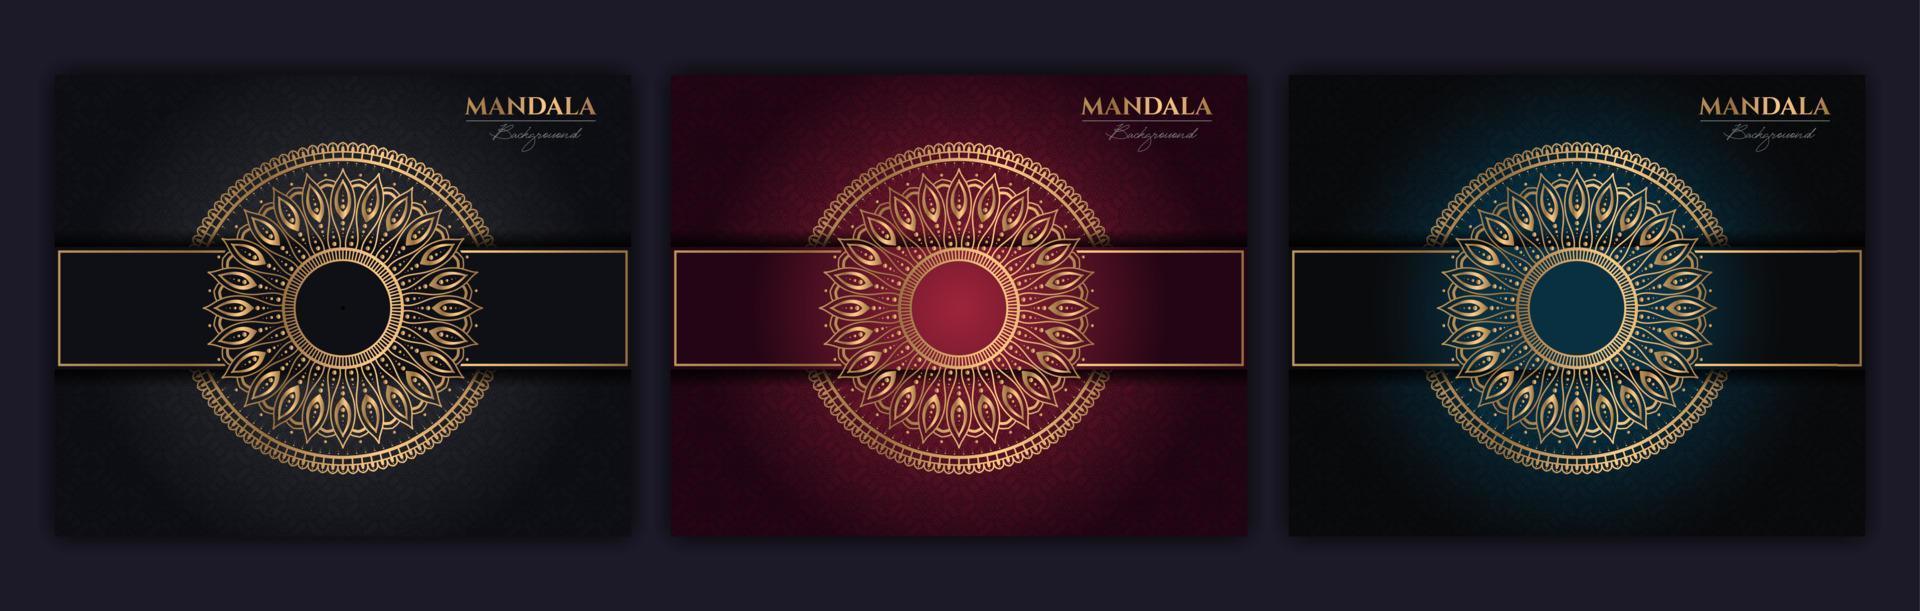 Satz von abstrakten Gold-Luxus-Mandala-Hintergrund-Vektor-Vorlagen, kreisförmige Zier-Arabesken-Muster für Poster, Cover, Broschüre, Flyer. roter, grüner, blauer hintergrund mit ethnischem blumenmandalaelement vektor